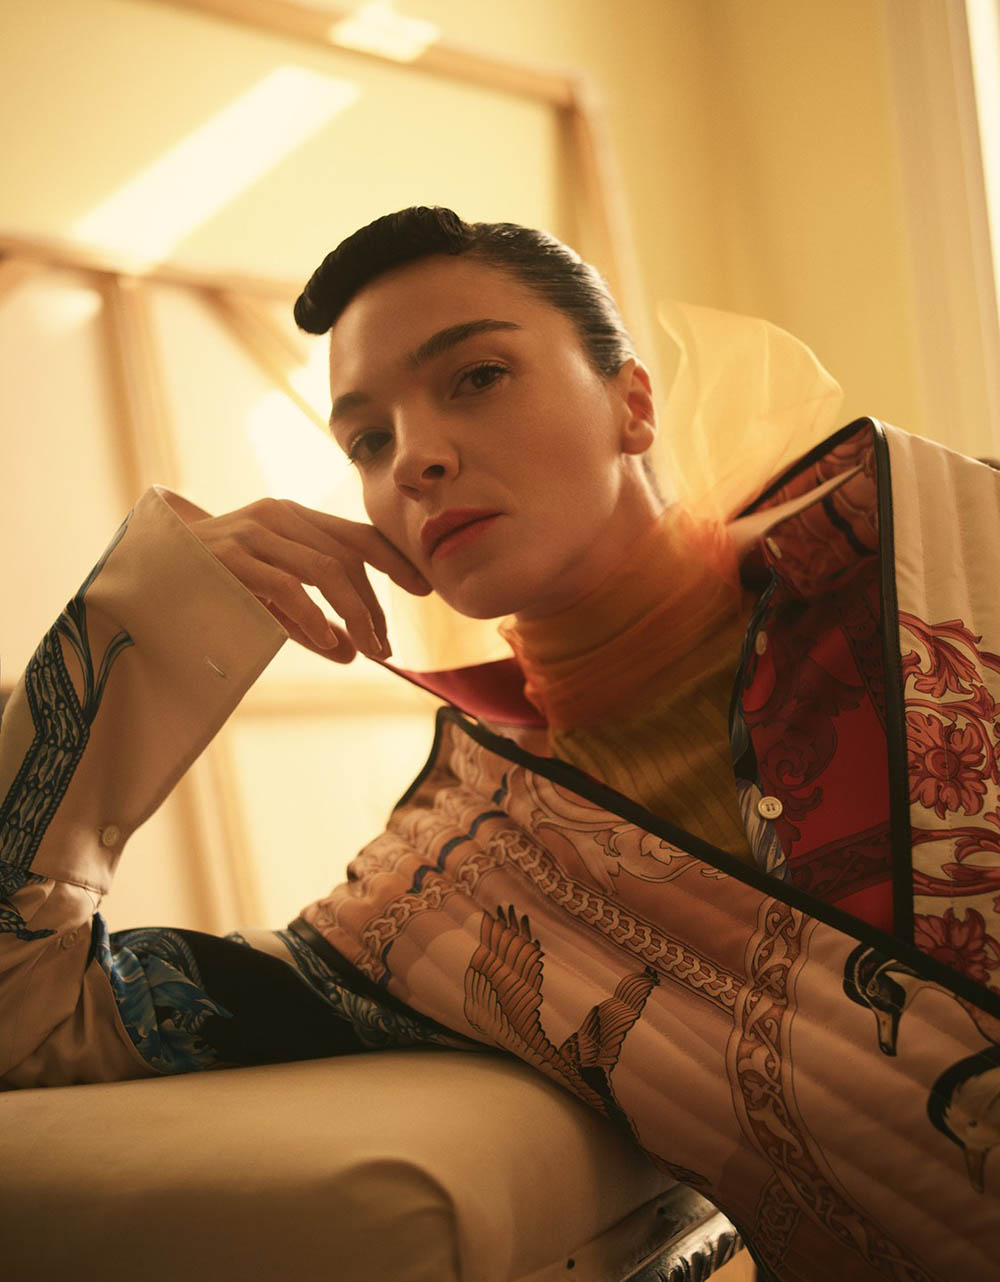 Mariacarla Boscono covers Vogue Mexico May 2018 by Stas Komarovski